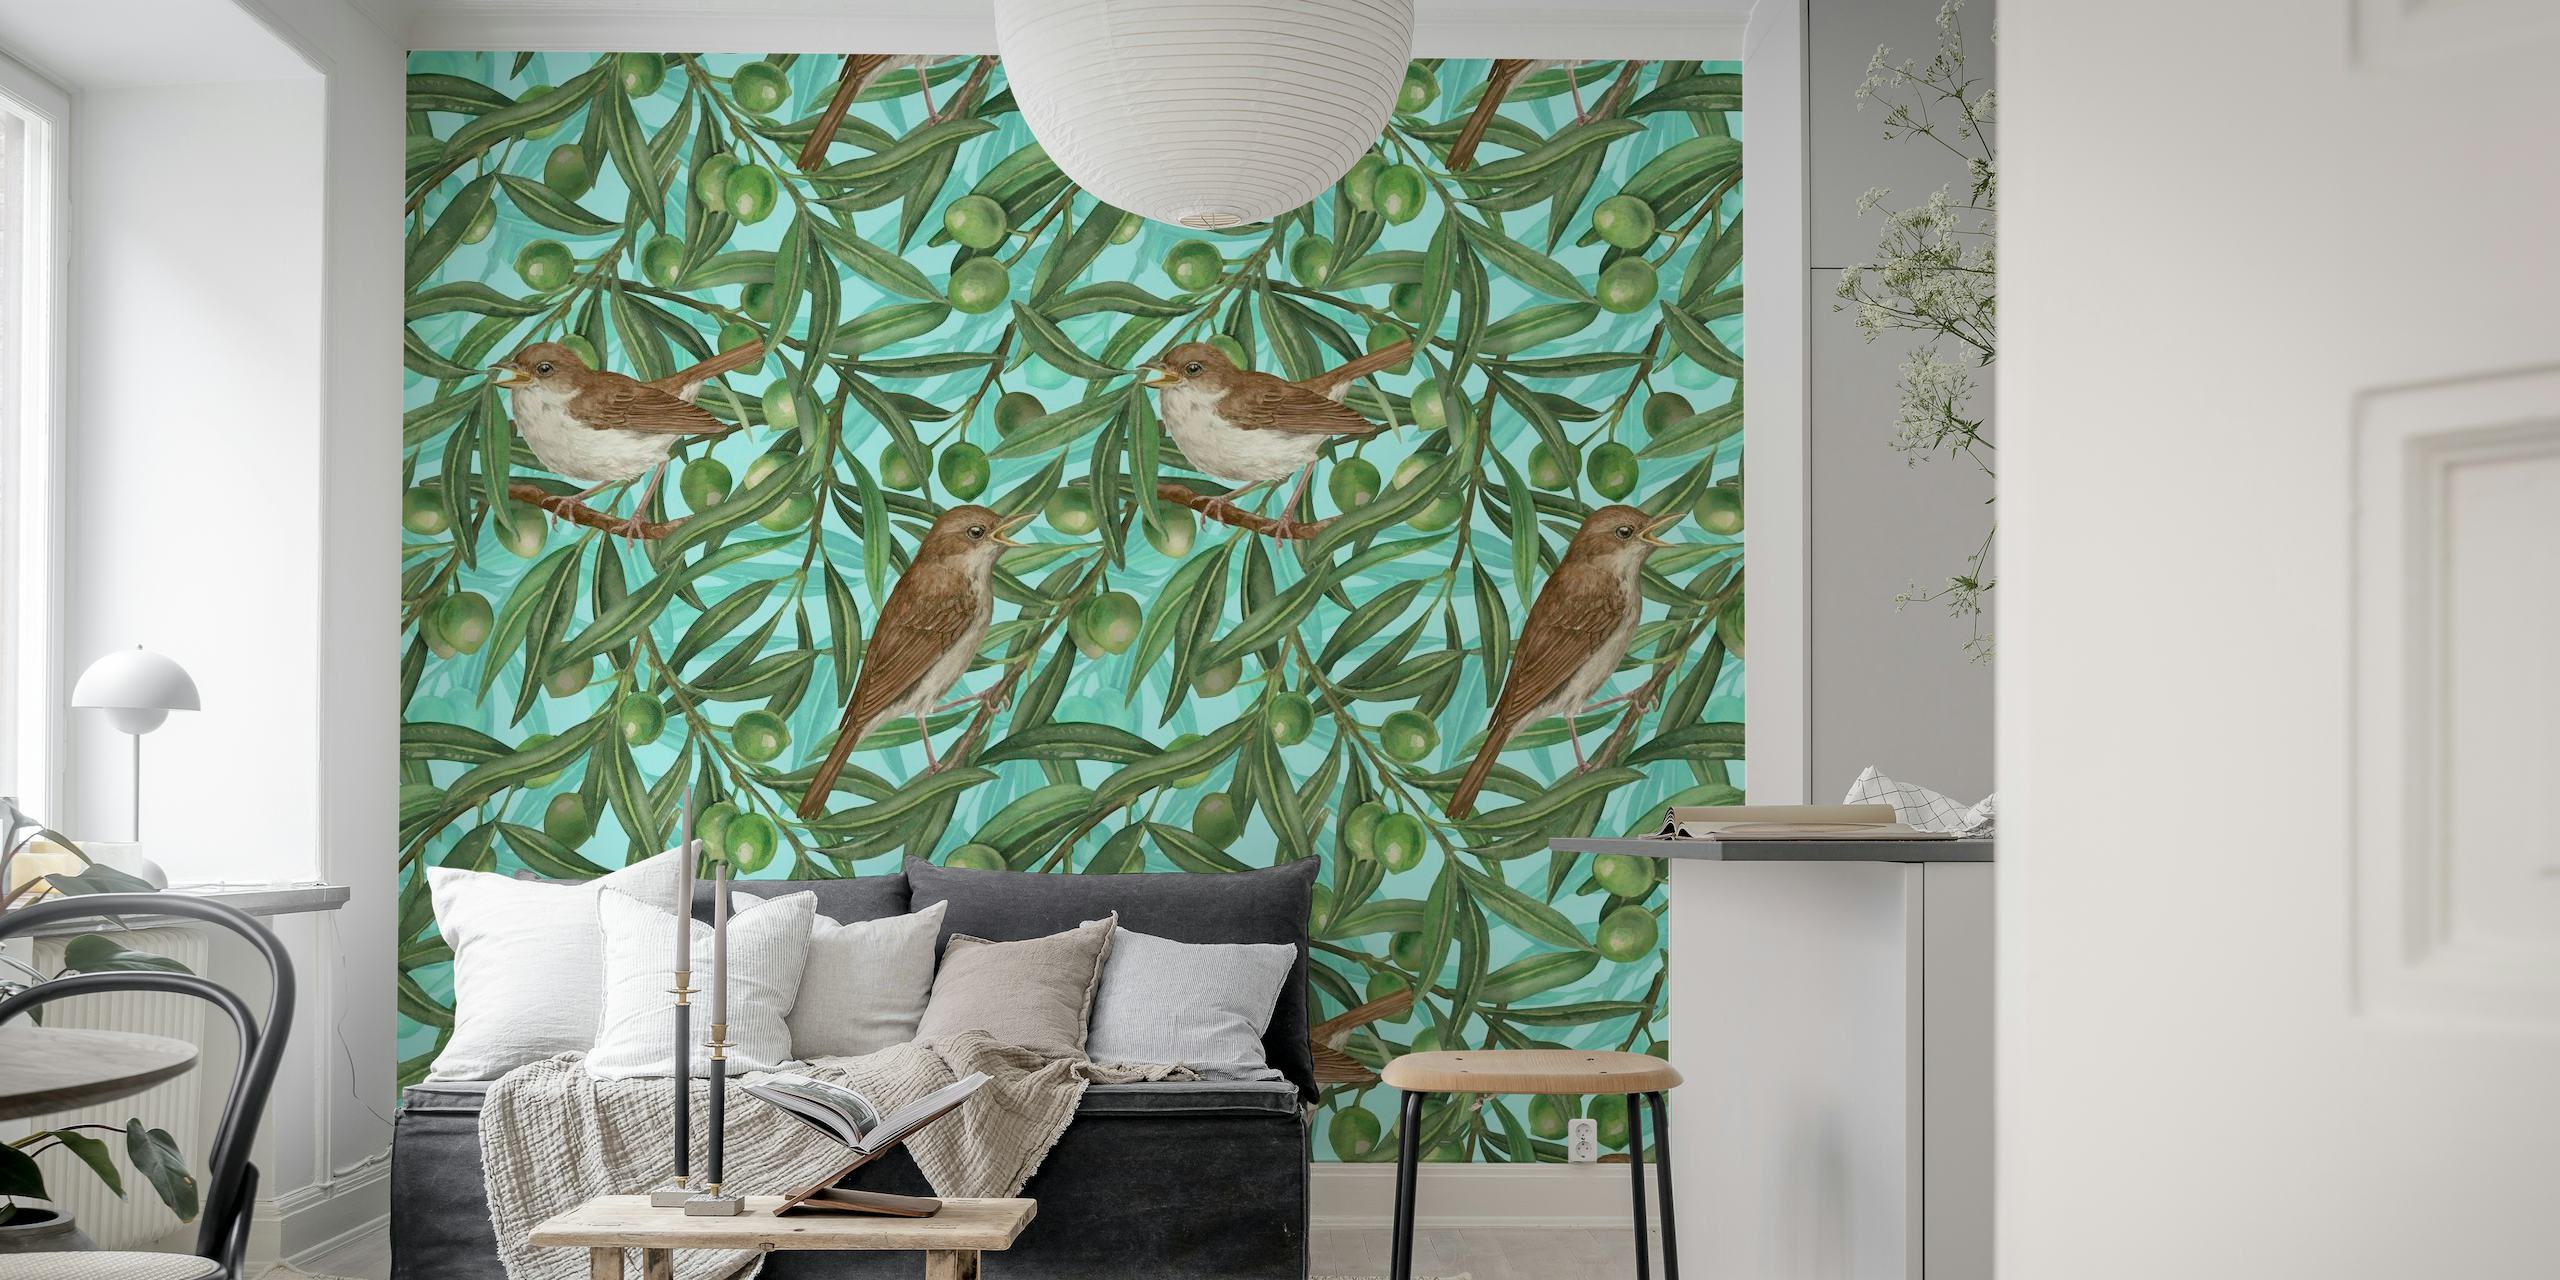 Mural ilustrativo de pájaros posados en olivos con aceitunas maduras